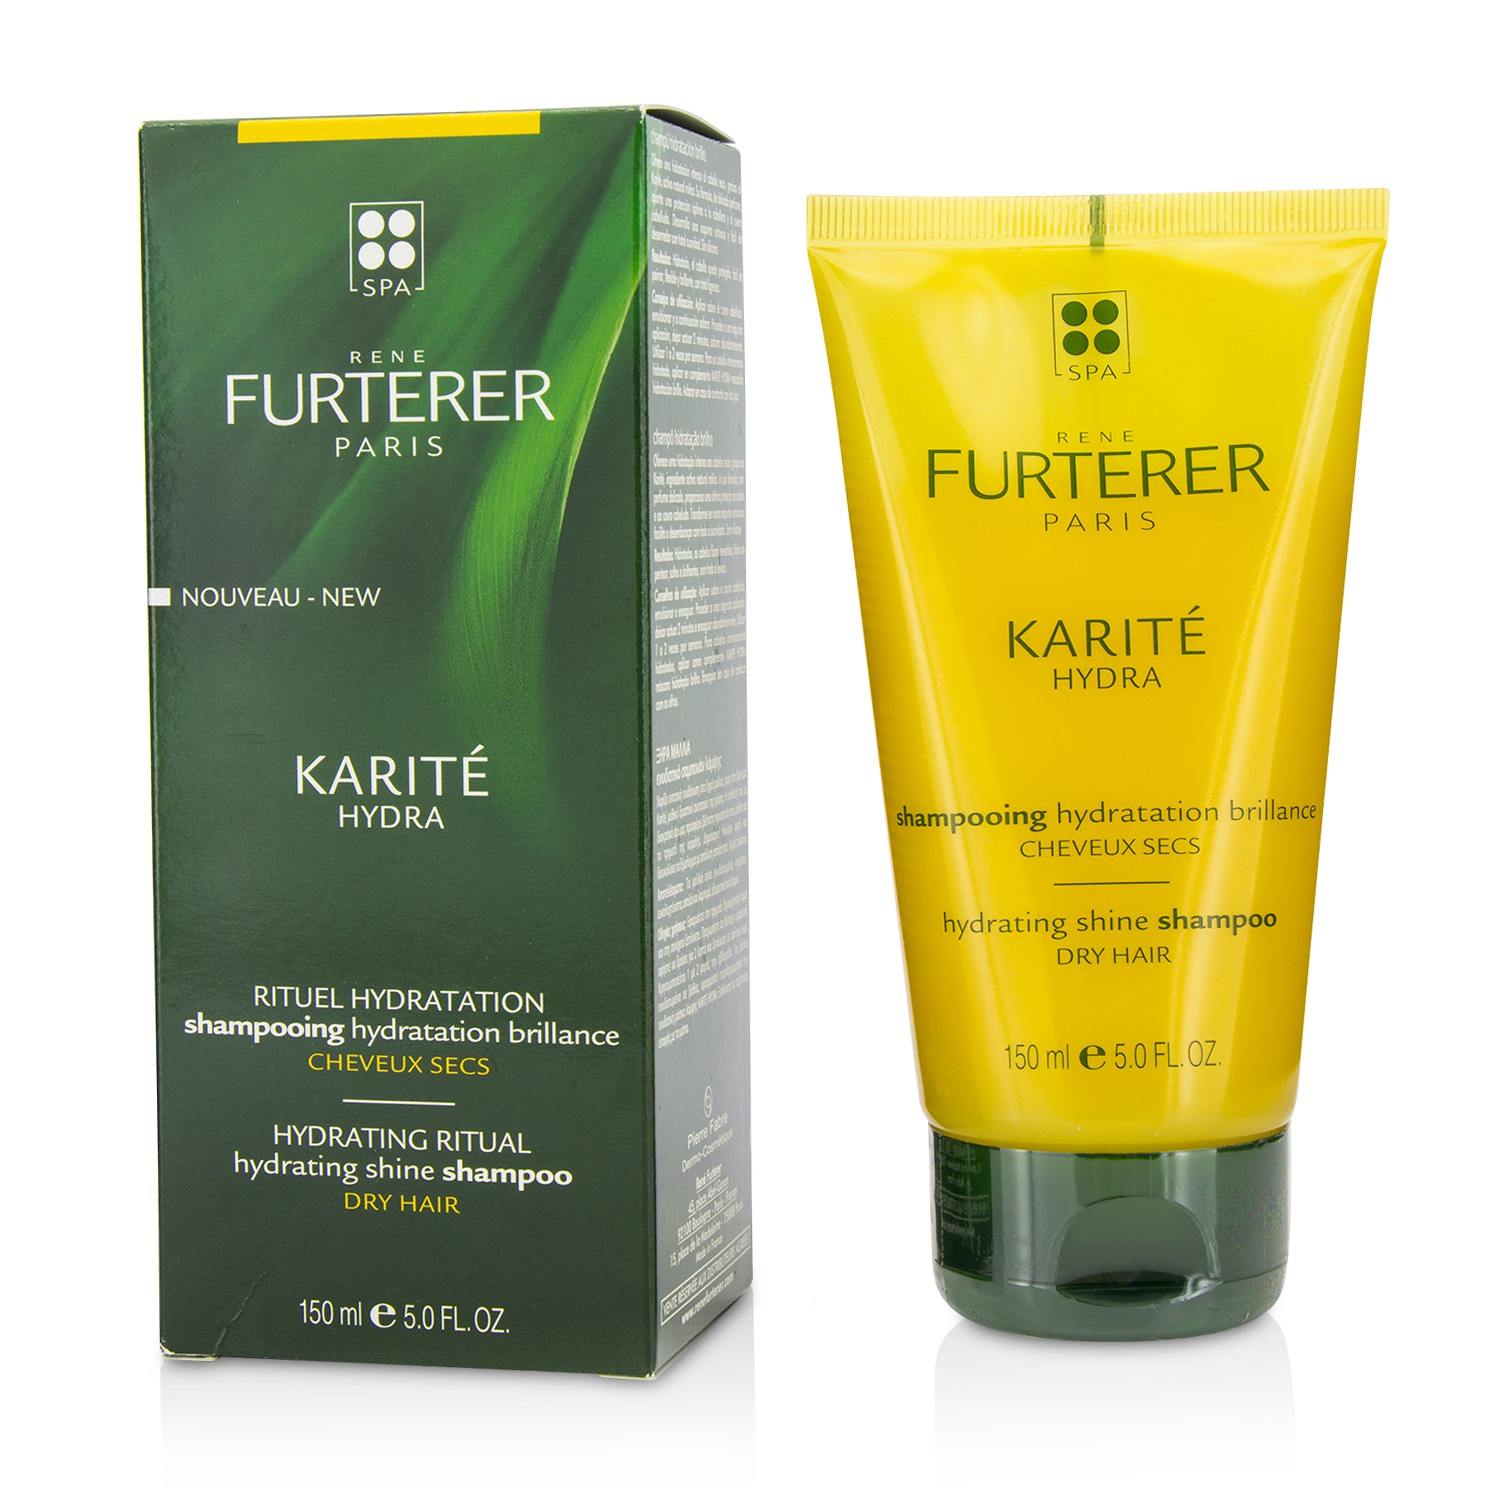 Karite Hydra Hydrating Shine Shampoo (Dry Hair) Rene Furterer Image